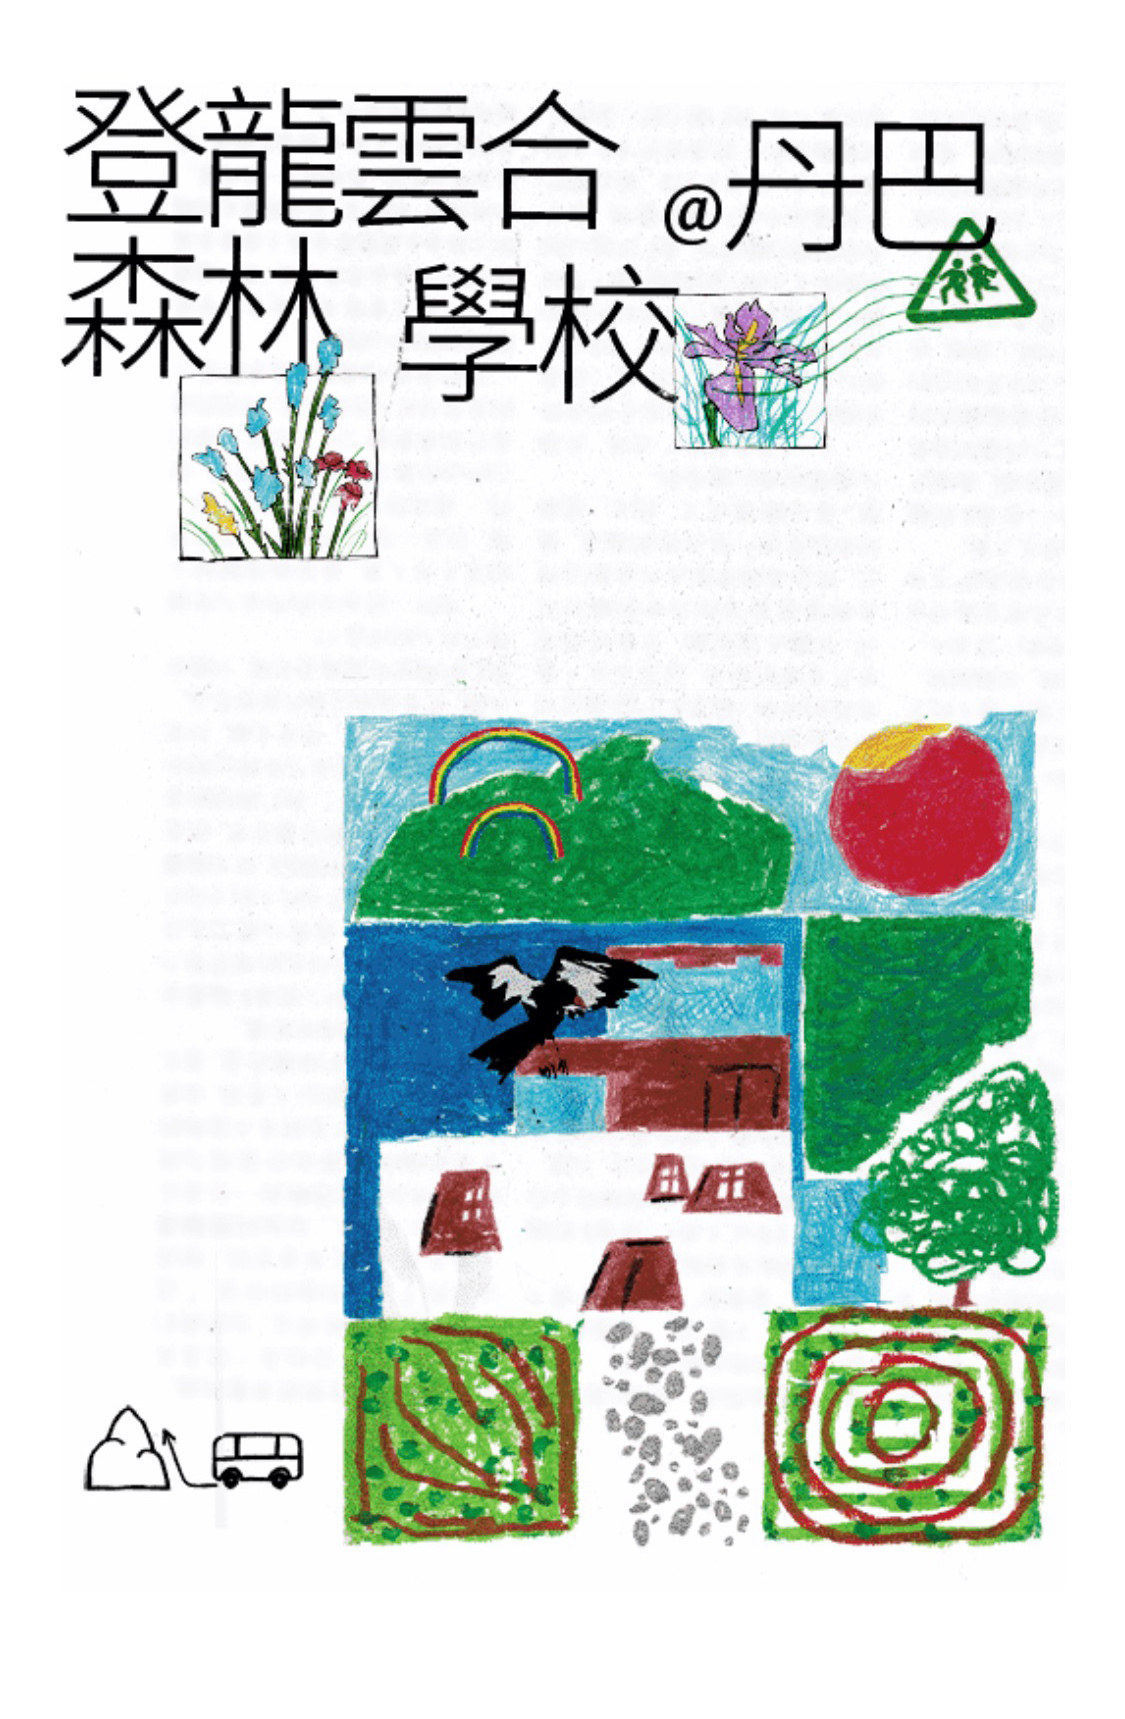 登龍云合森林學校 - 公眾號形象設計/宣傳視覺延展圖0